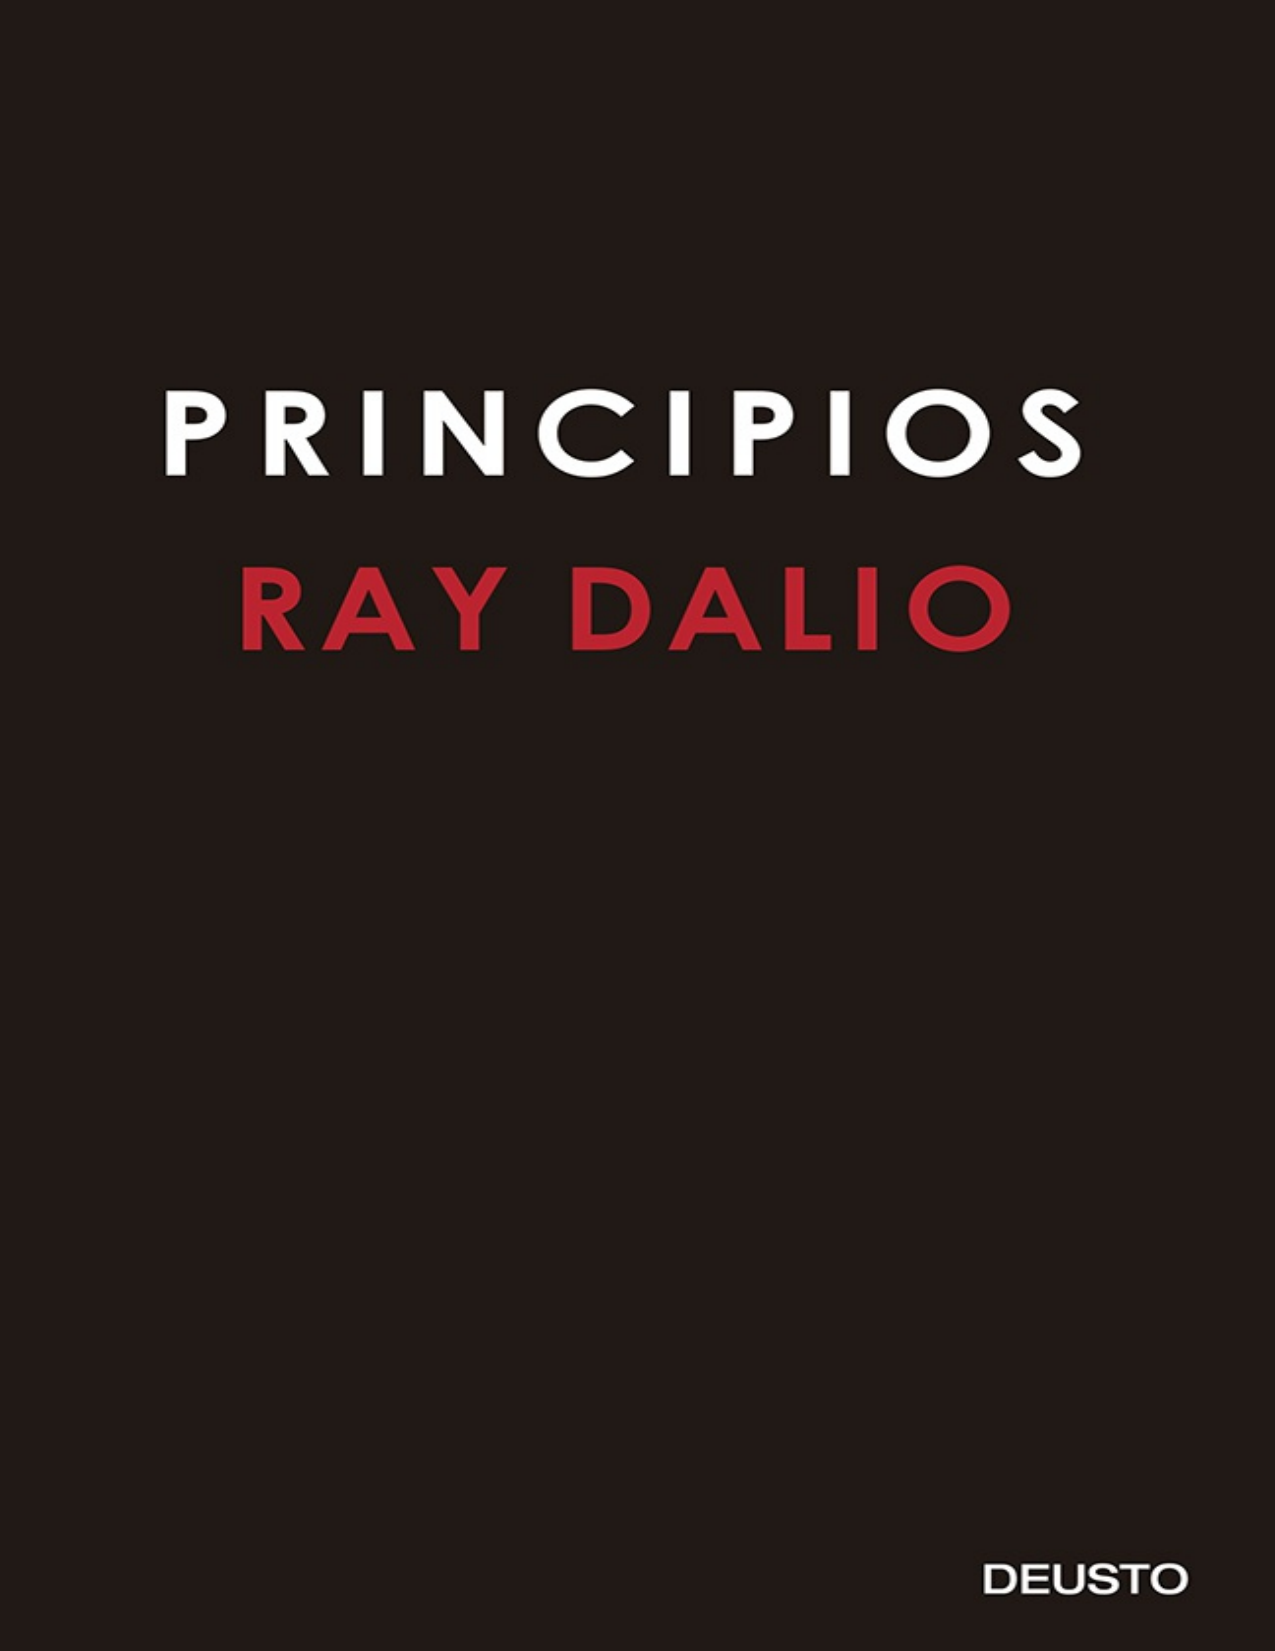 principles ray dalio mp3 download